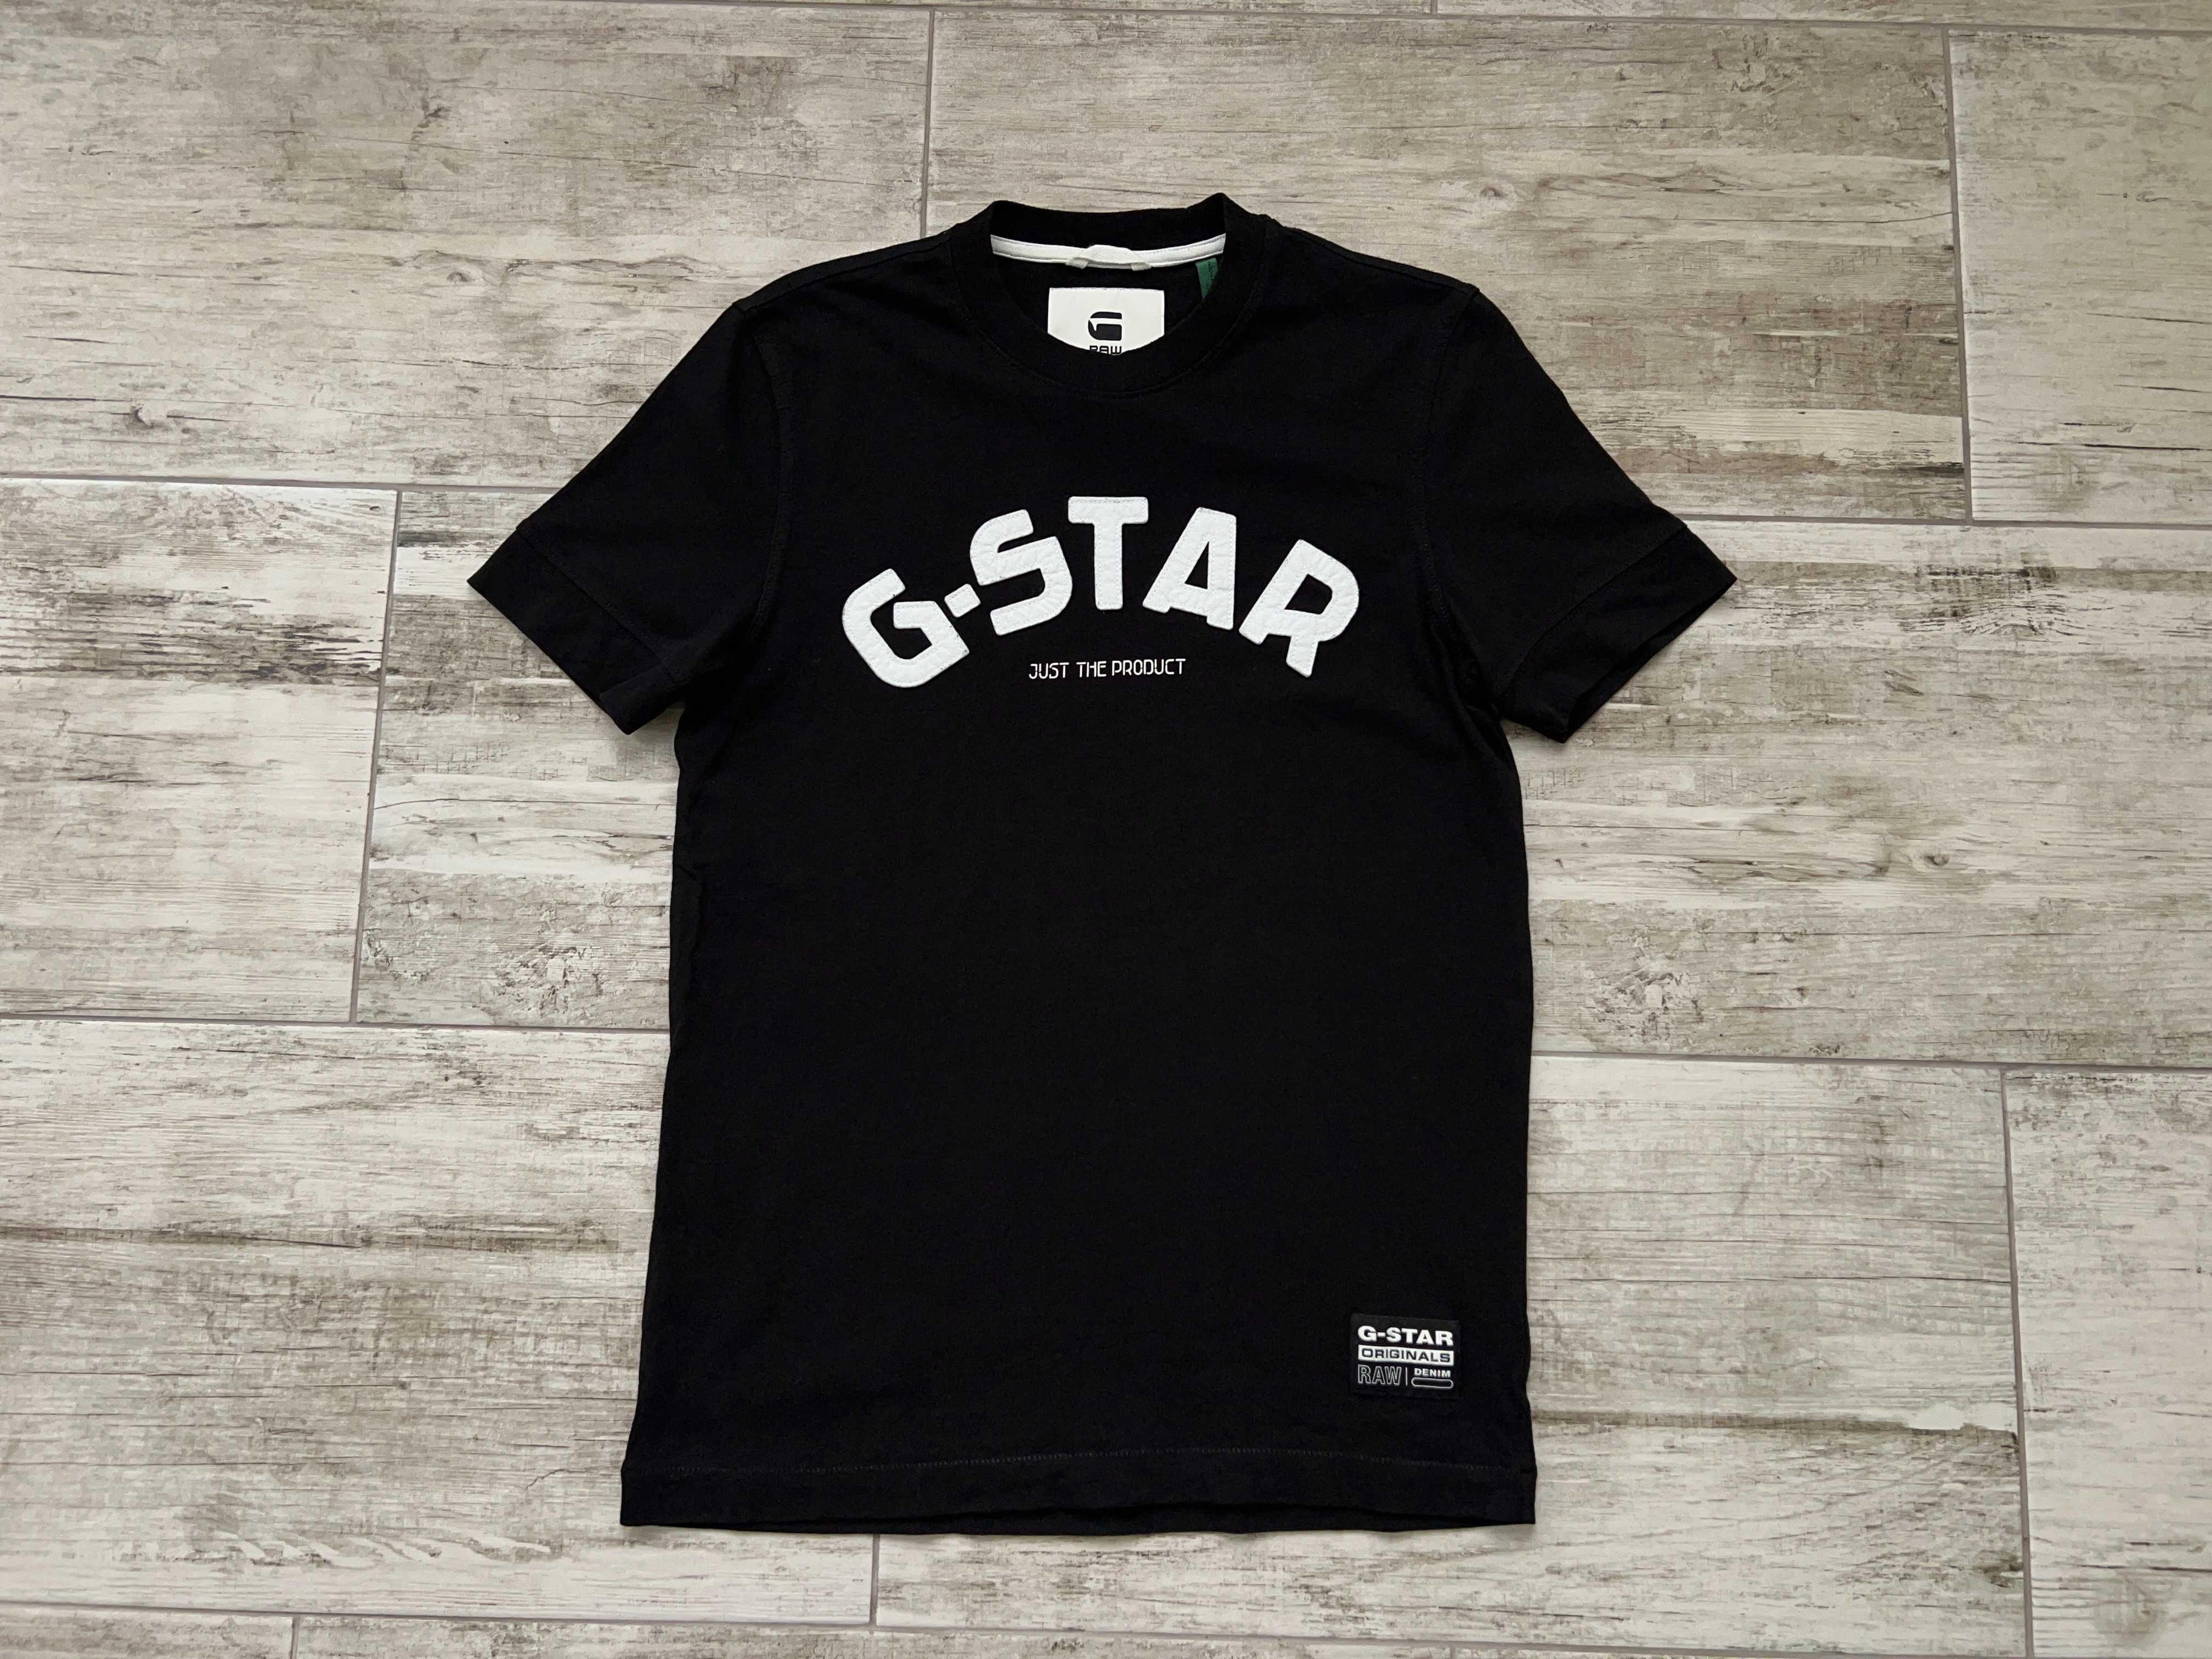 G Star чорна футболка чоловіча оригінал біг лого коттонова оригінал